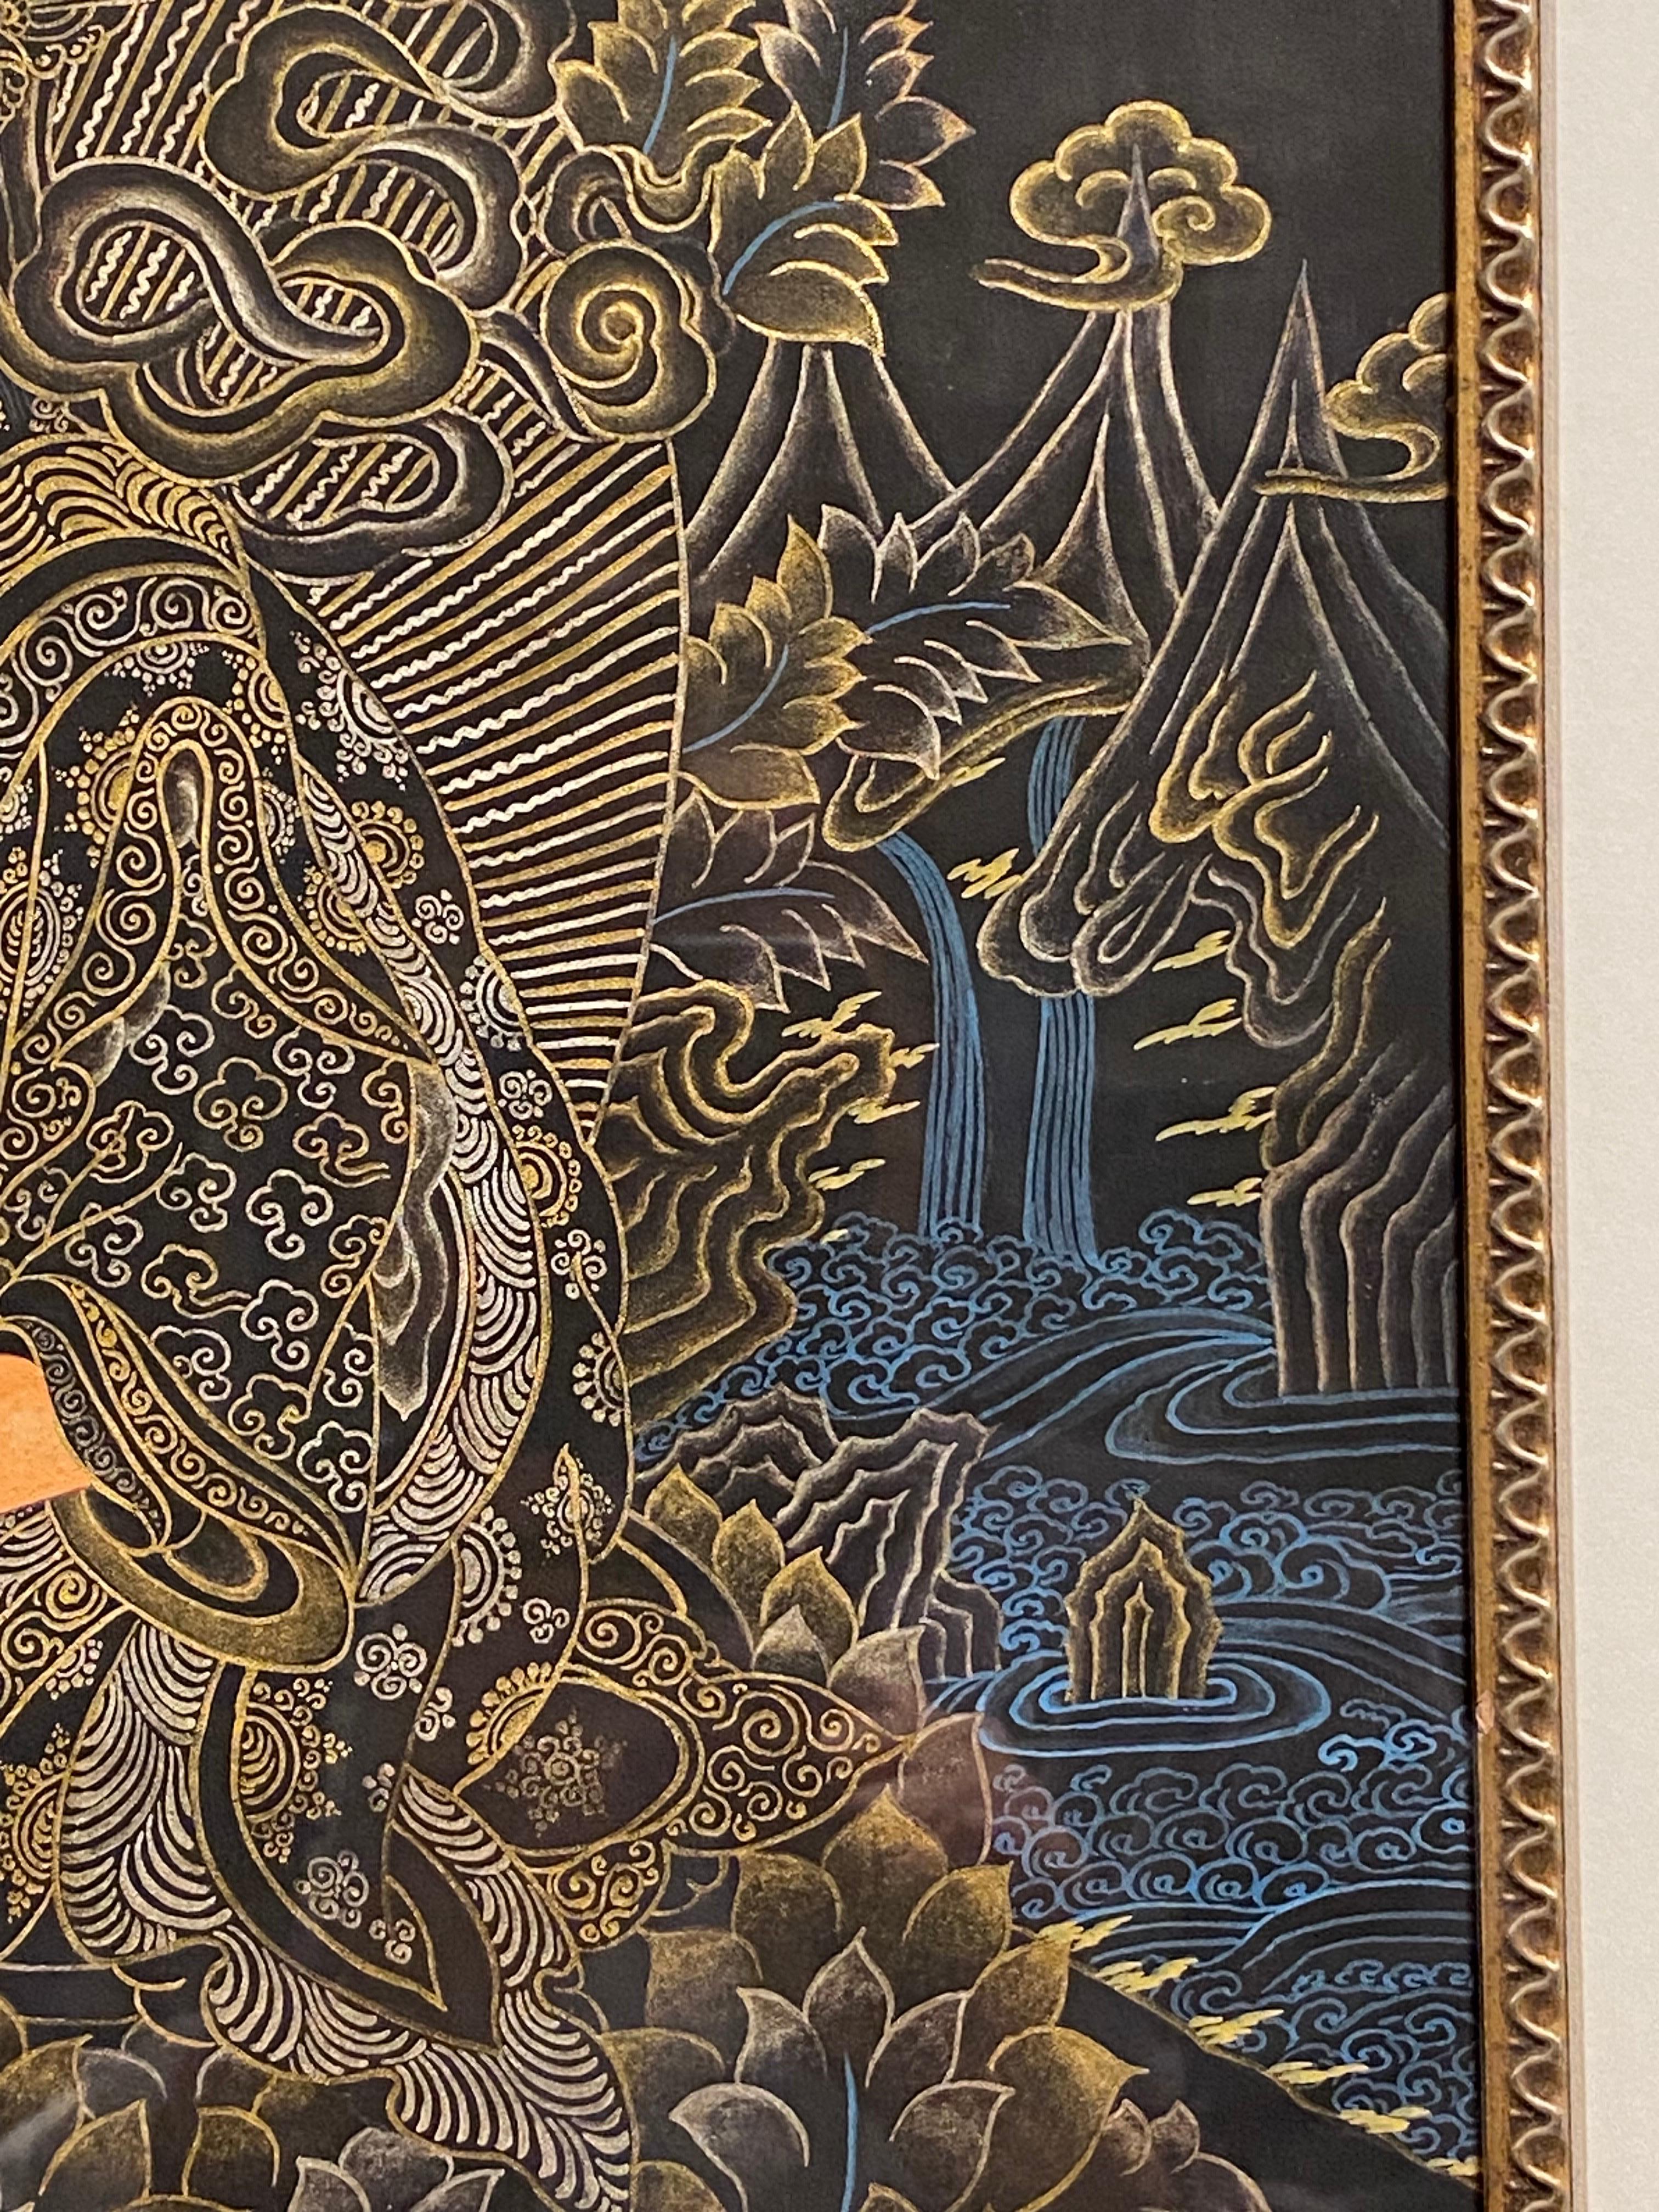 Framed Hand Painted Padmasambhava Thangka on Canvas 24K Gold  For Sale 4